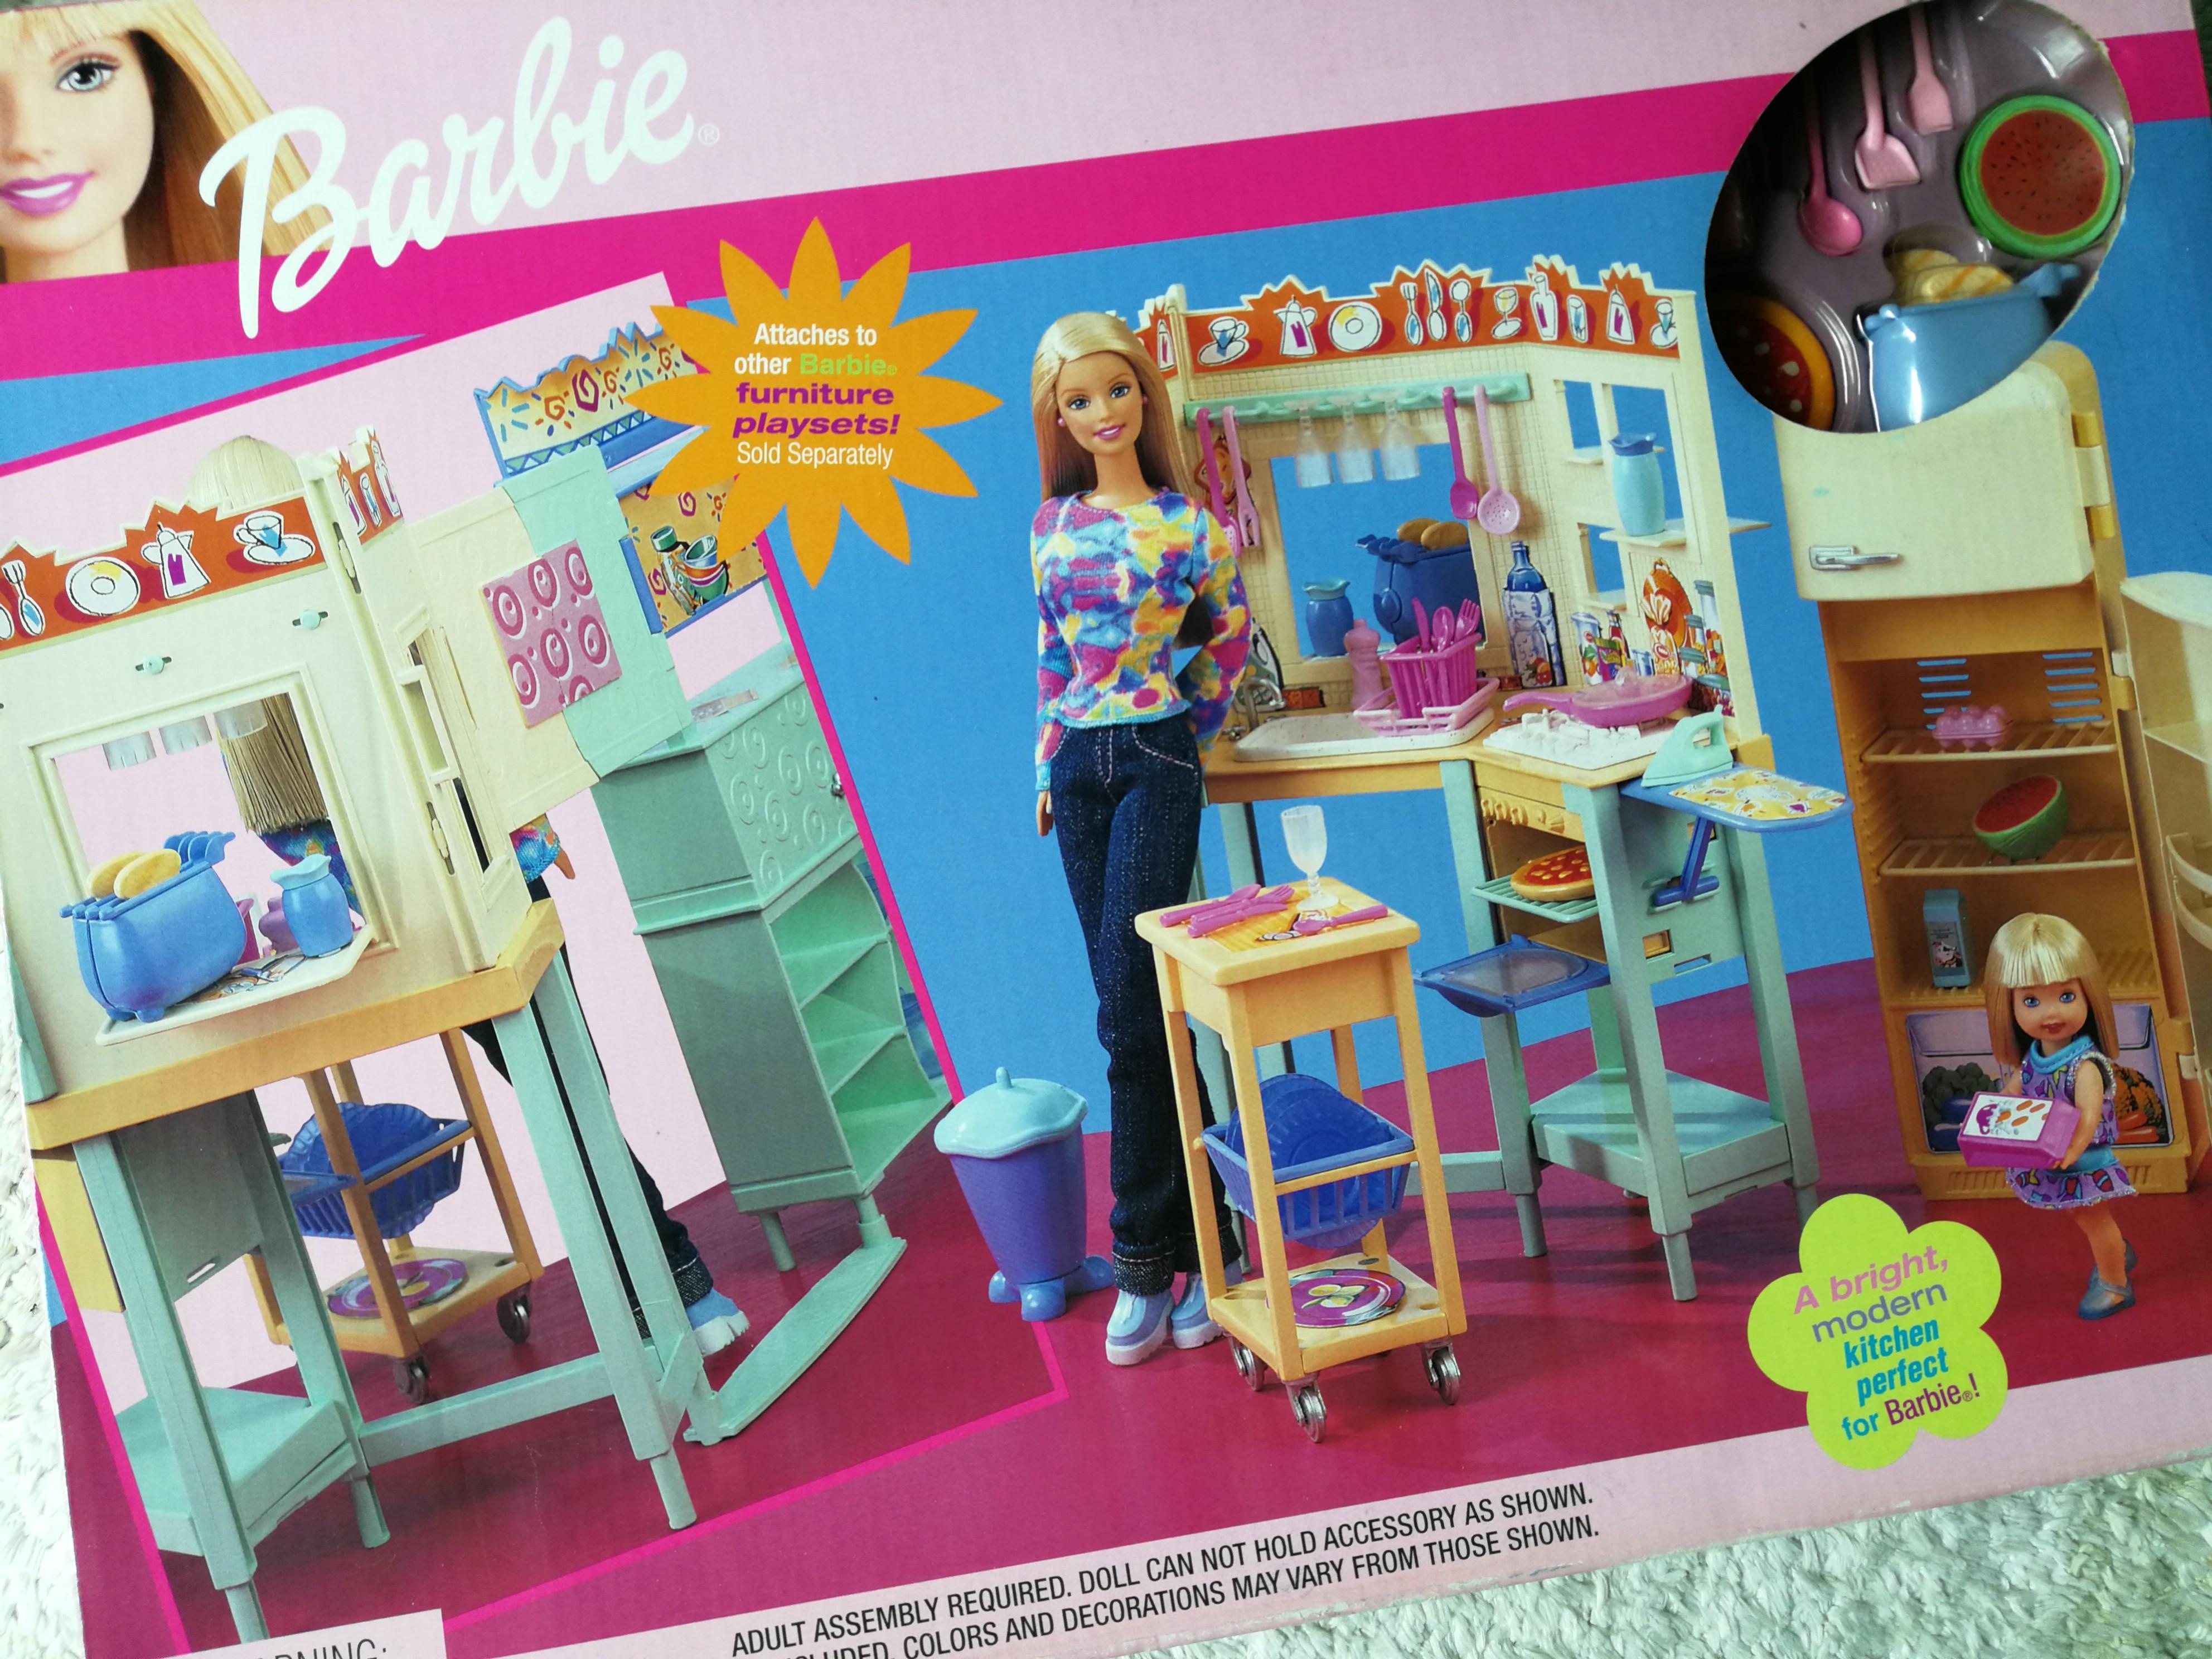 vintage barbie kitchen